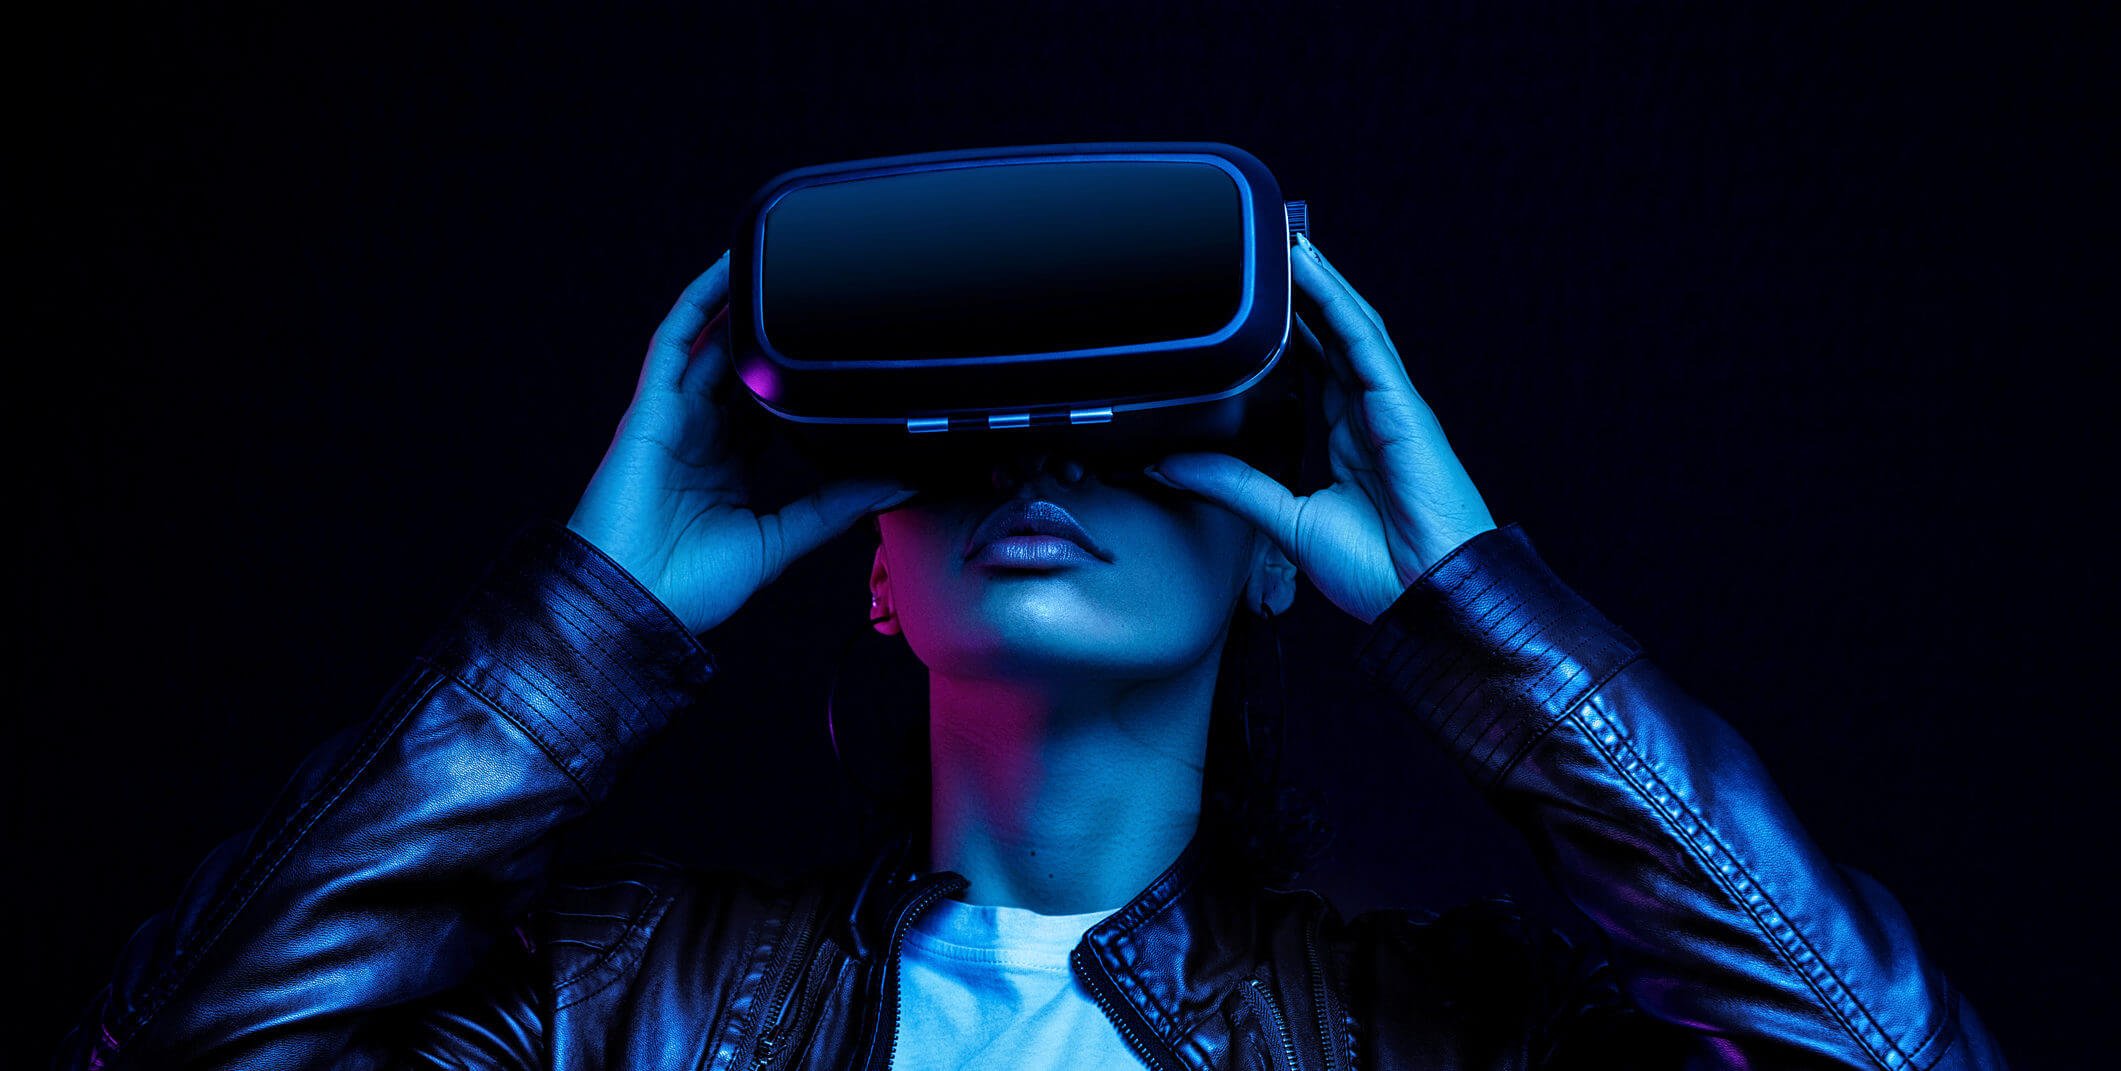 Побочные эффекты технологий виртуальной реальности: что нужно знать? В ближайшем будущем компьютерные мониторы можно будет заменить на портативные устройства виртуальной реальности. Но хорошая ли это идея? Фото.